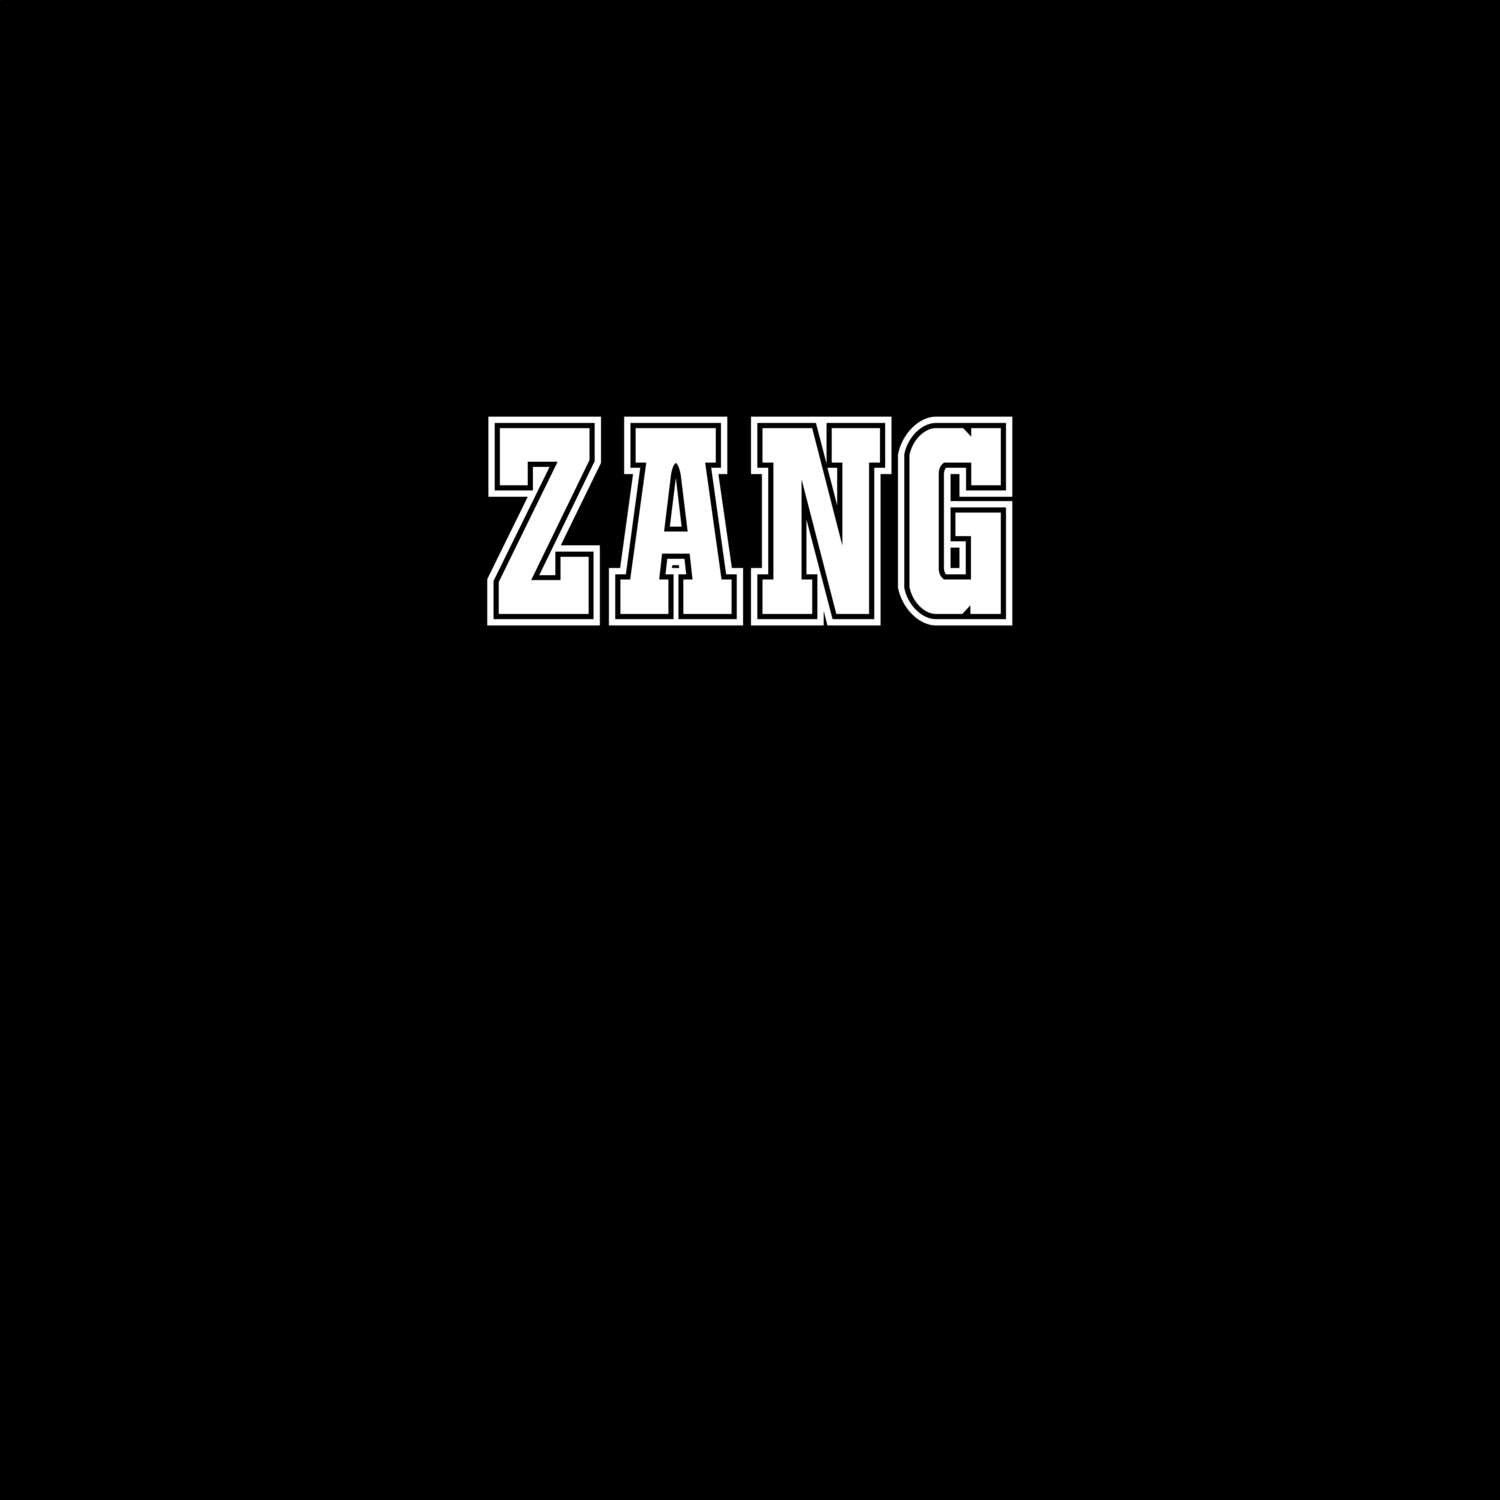 Zang T-Shirt »Classic«